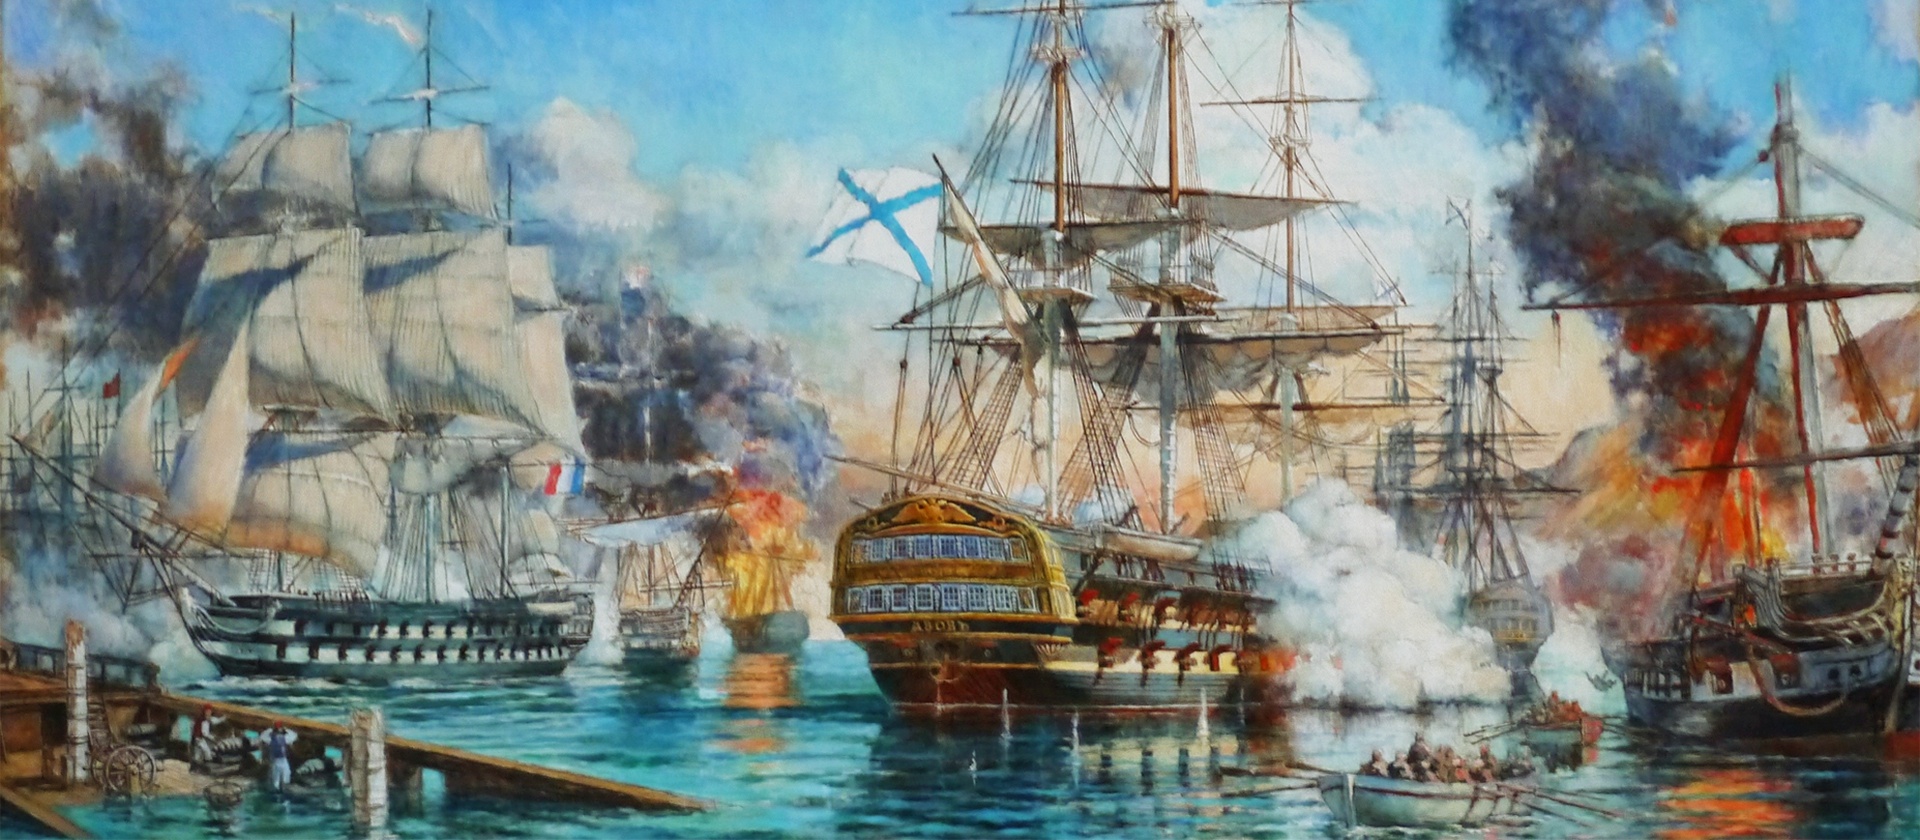 Наваринское Морское сражение 1827